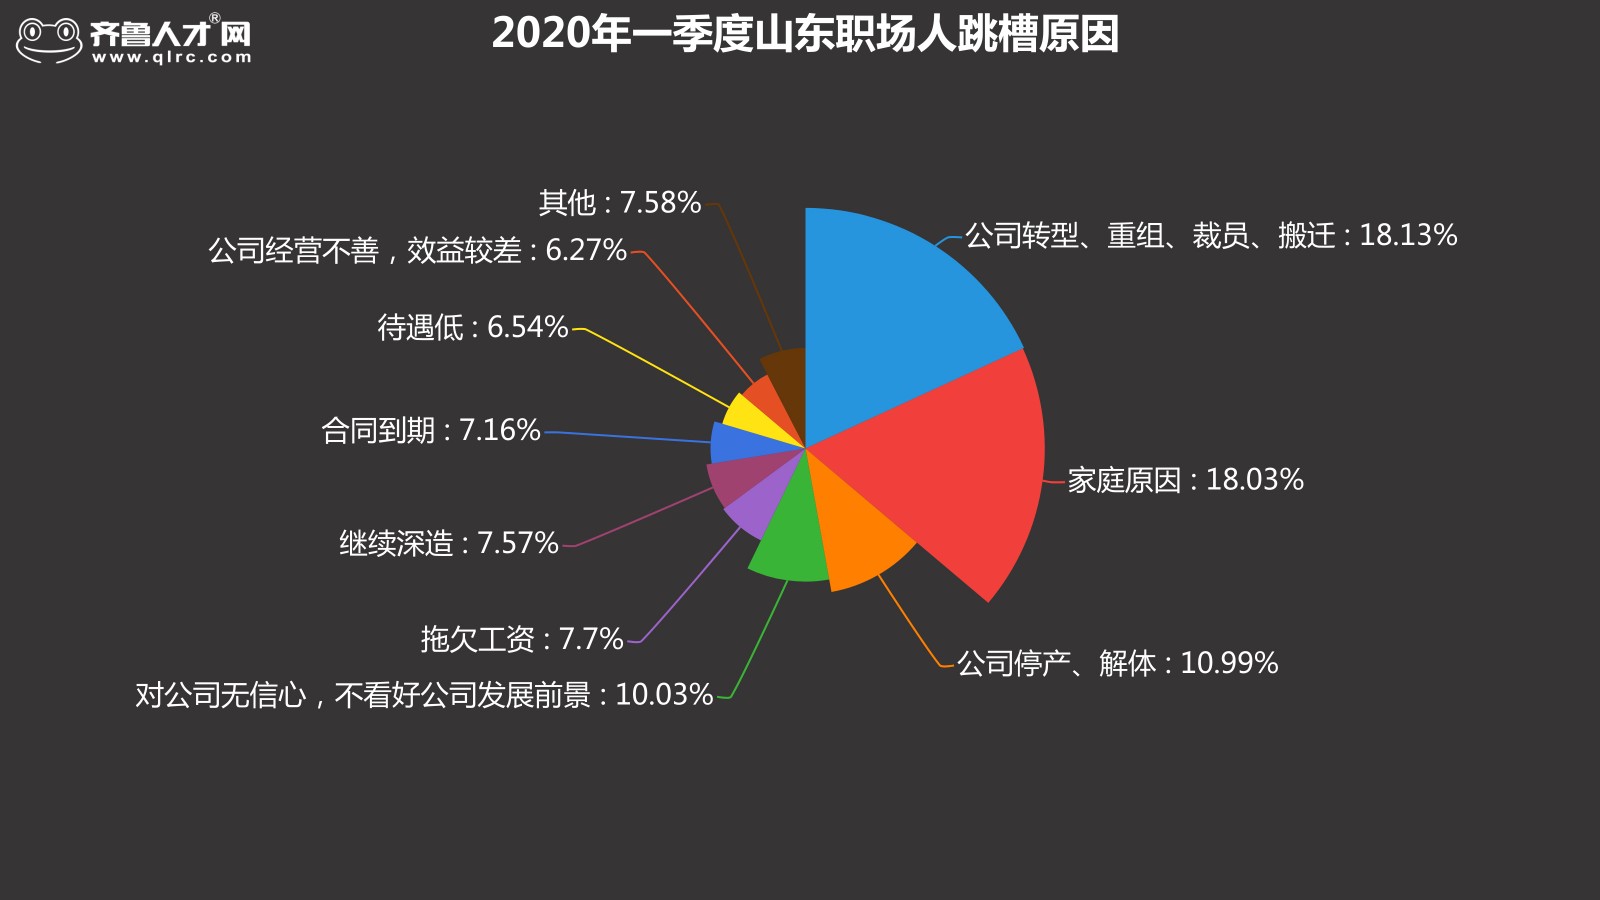 齊魯人才網-2020年一季度跳槽數據圖5.jpg